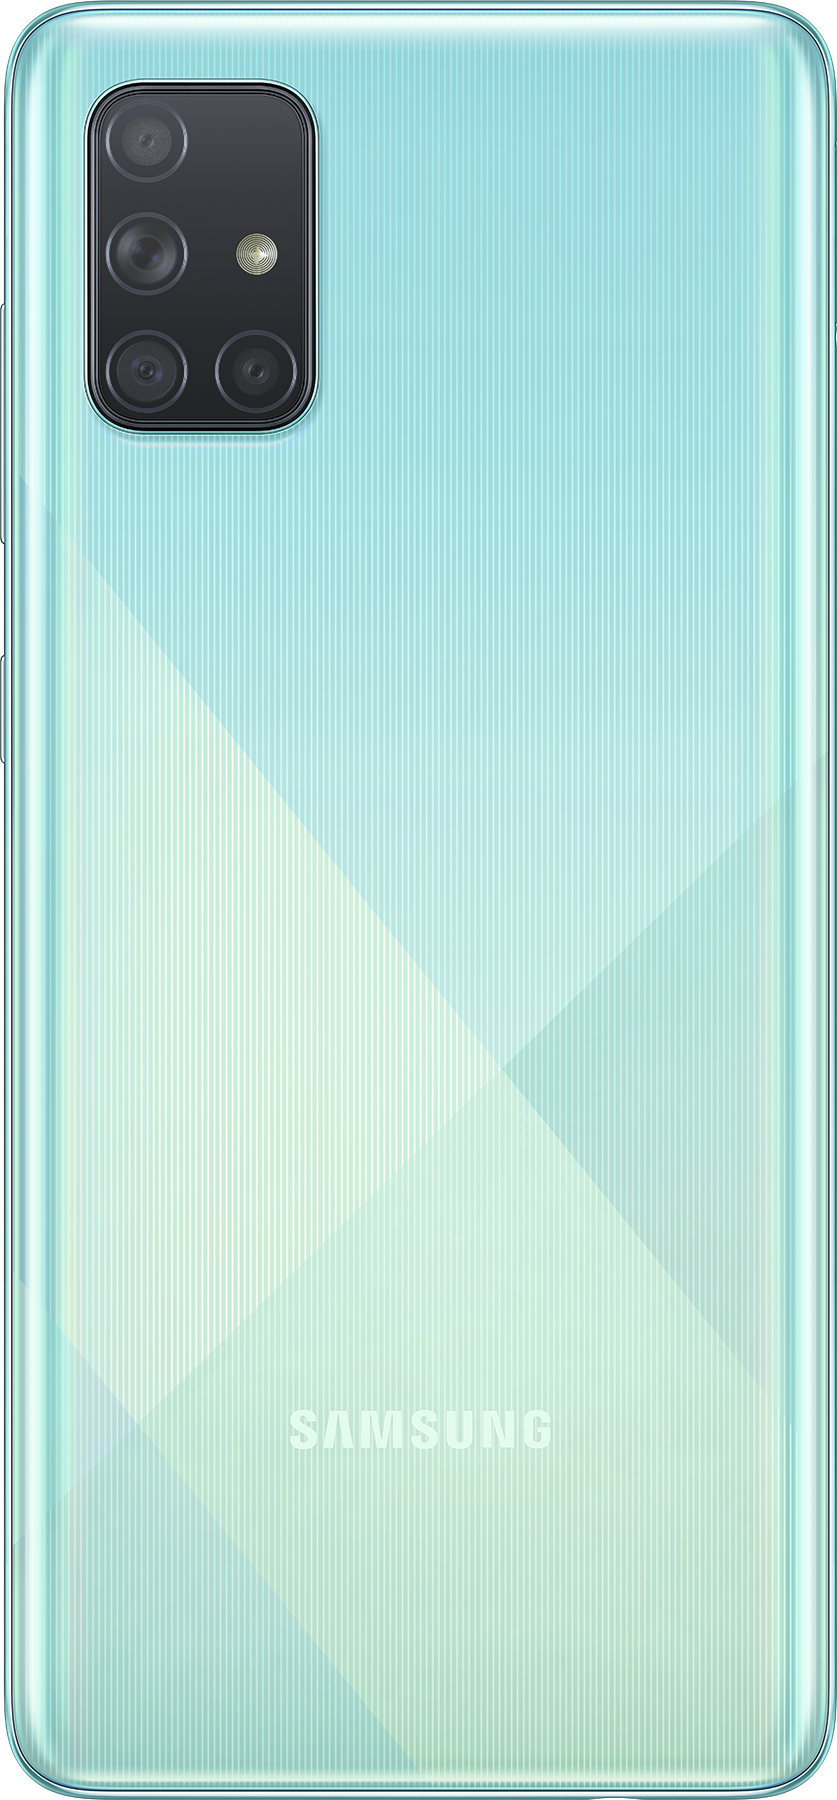 Samsung Galaxy A71 SM-A715F 6/128GB